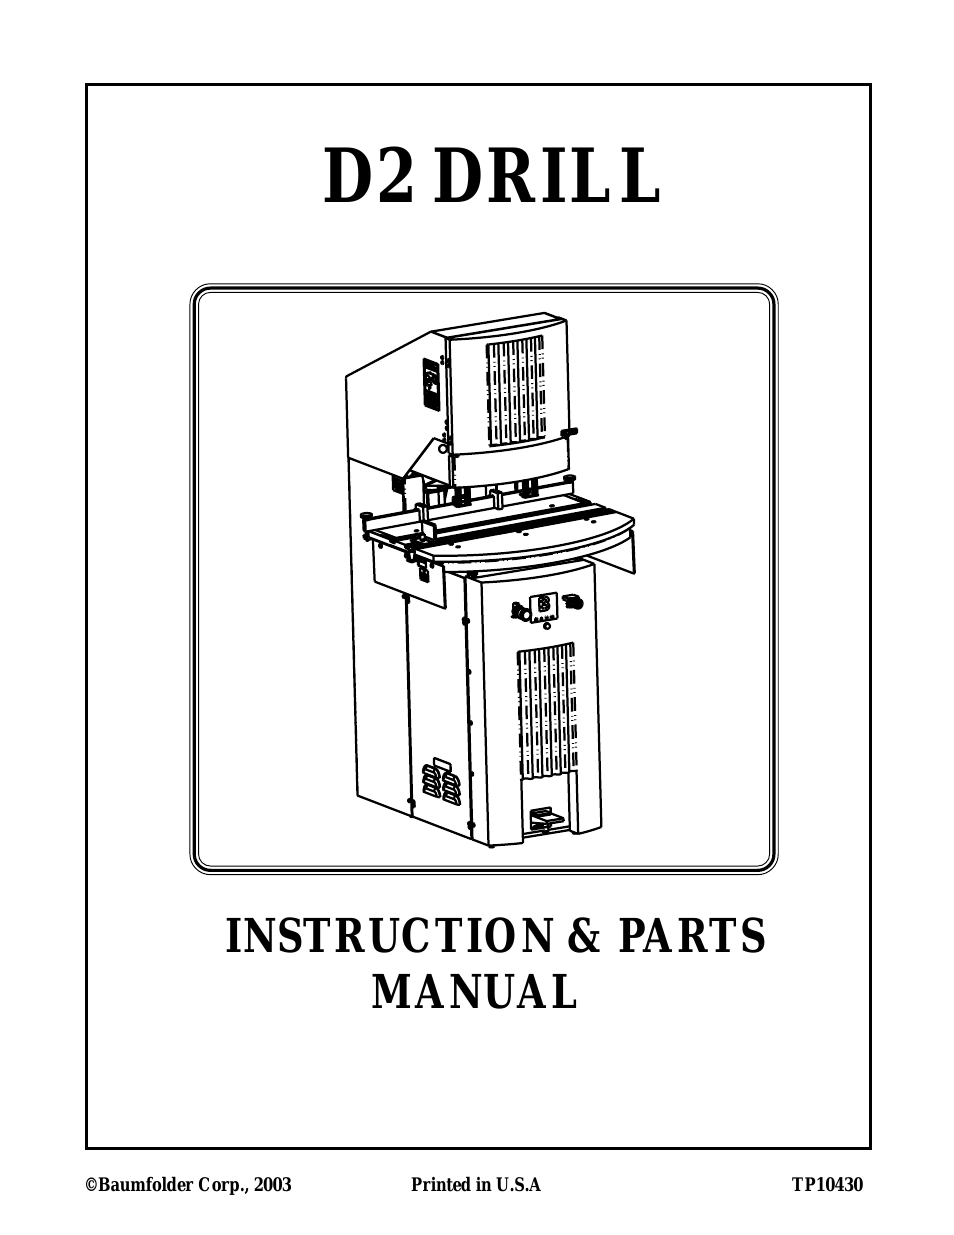 D2 Drill